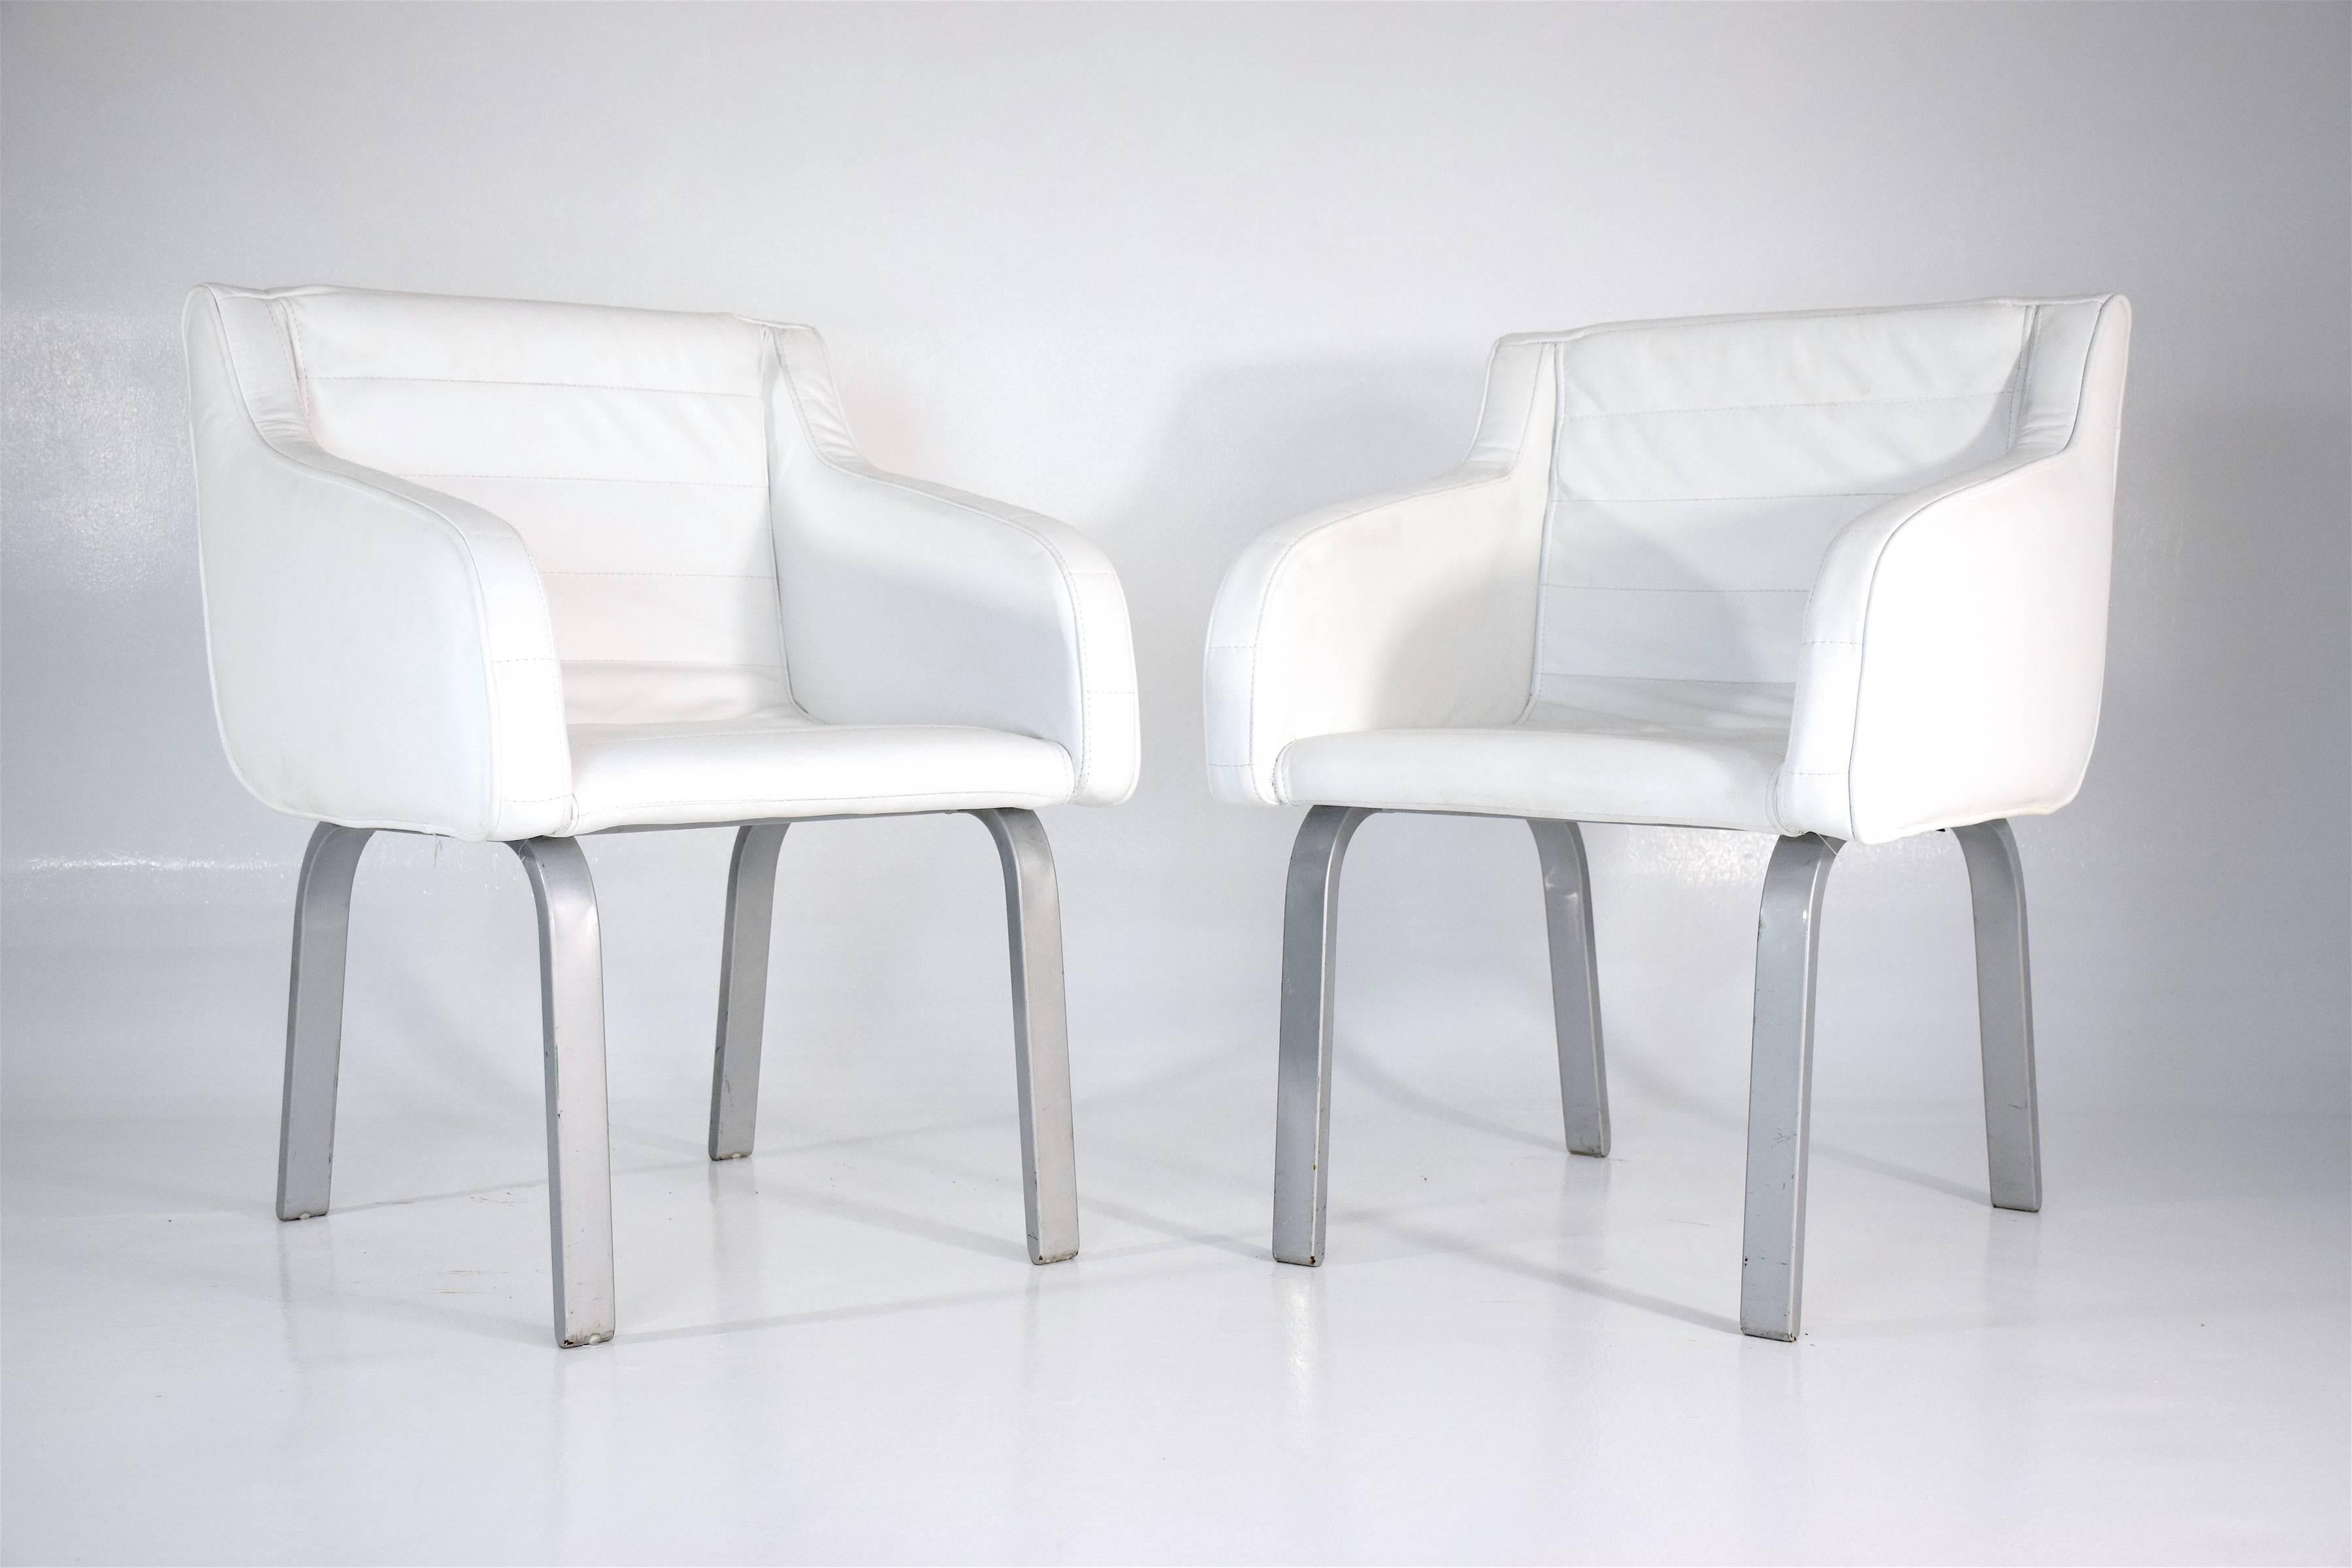 paire de fauteuils vintage du 20e siècle conçue par l'architecte français Christian Biecher pour un restaurant d'élite parisien nommé le Korova en 1999. Ceux-ci ont été édités par le célèbre fabricant de meubles italien Poltrona Frau.

Ces chaises